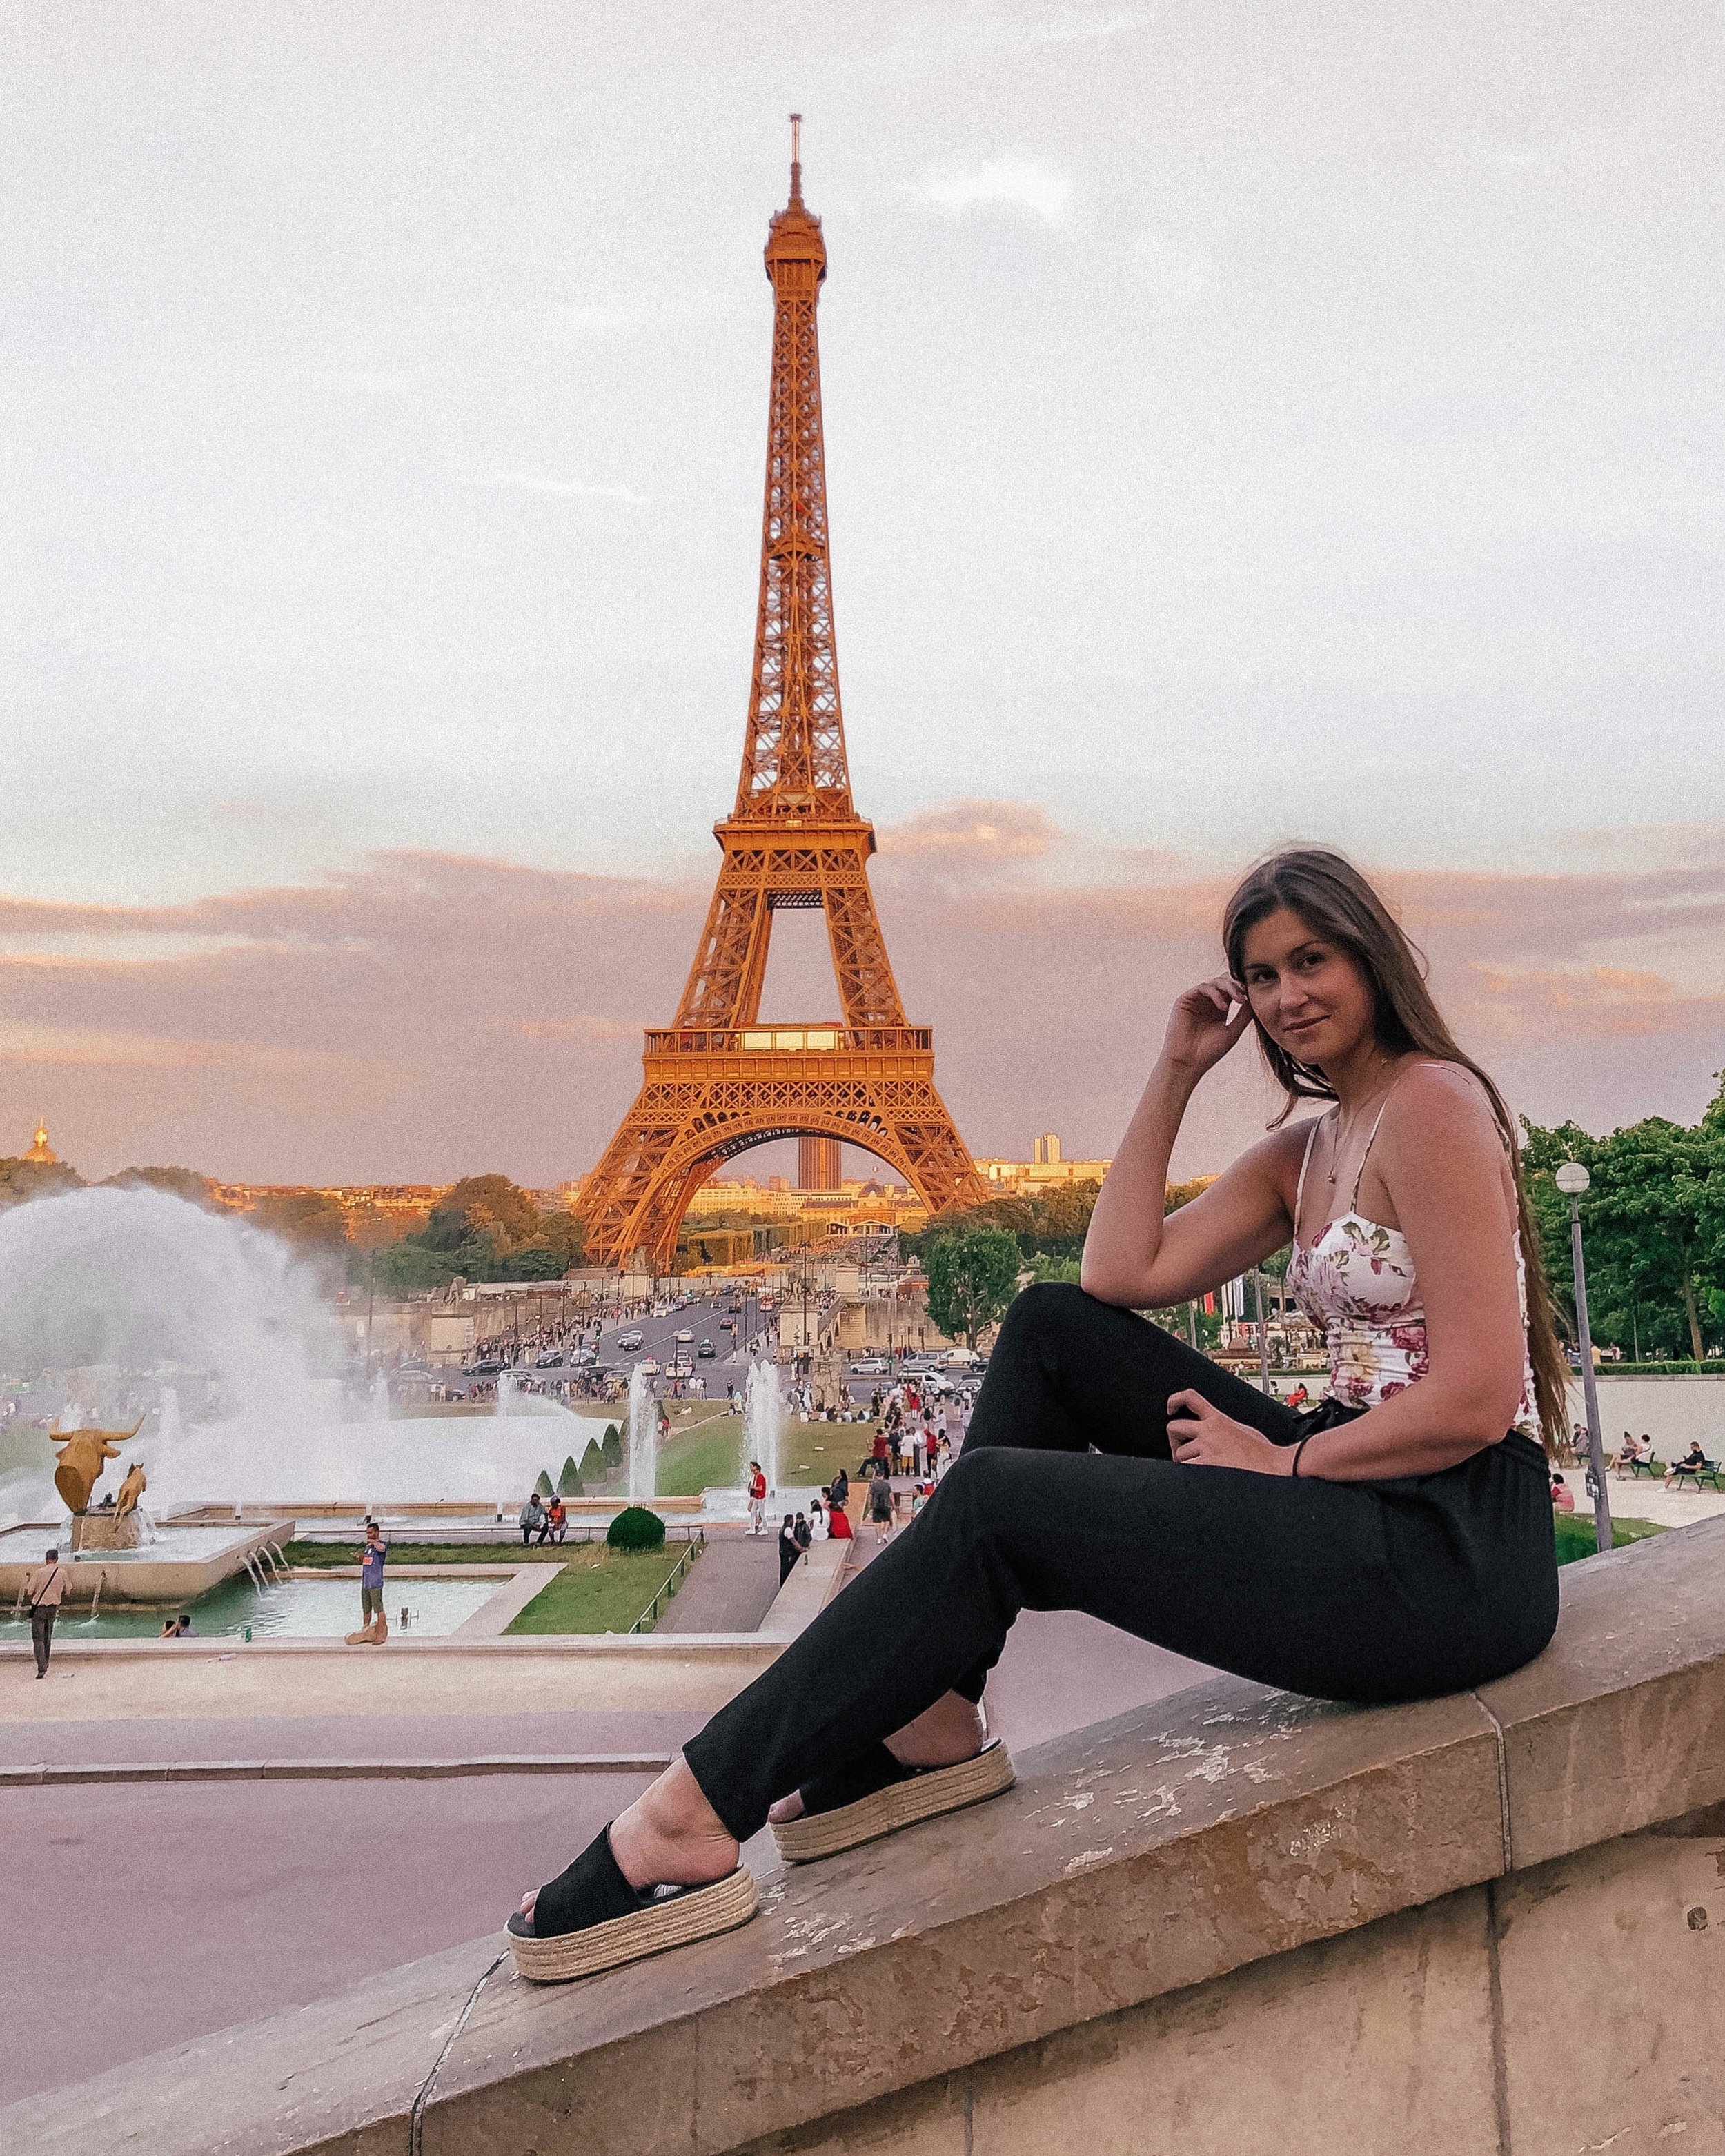 Place du Trocadéro Staircase - Eiffel Tower / Tour Eiffel - Paris - France